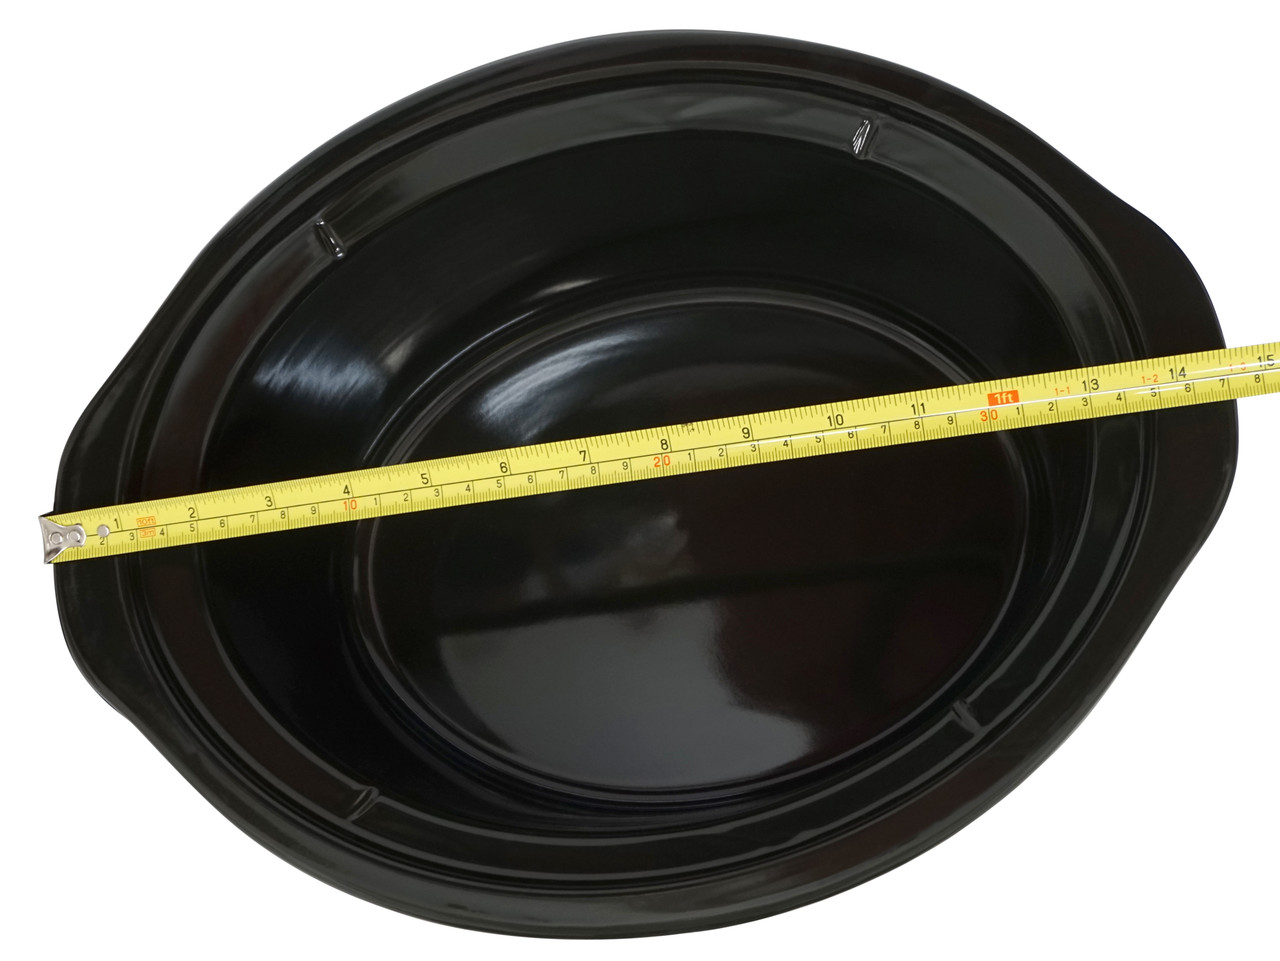 6 Qt Black Stoneware fits Crock-Pot Lift & Serve Slow Cooker, 183602-000-000